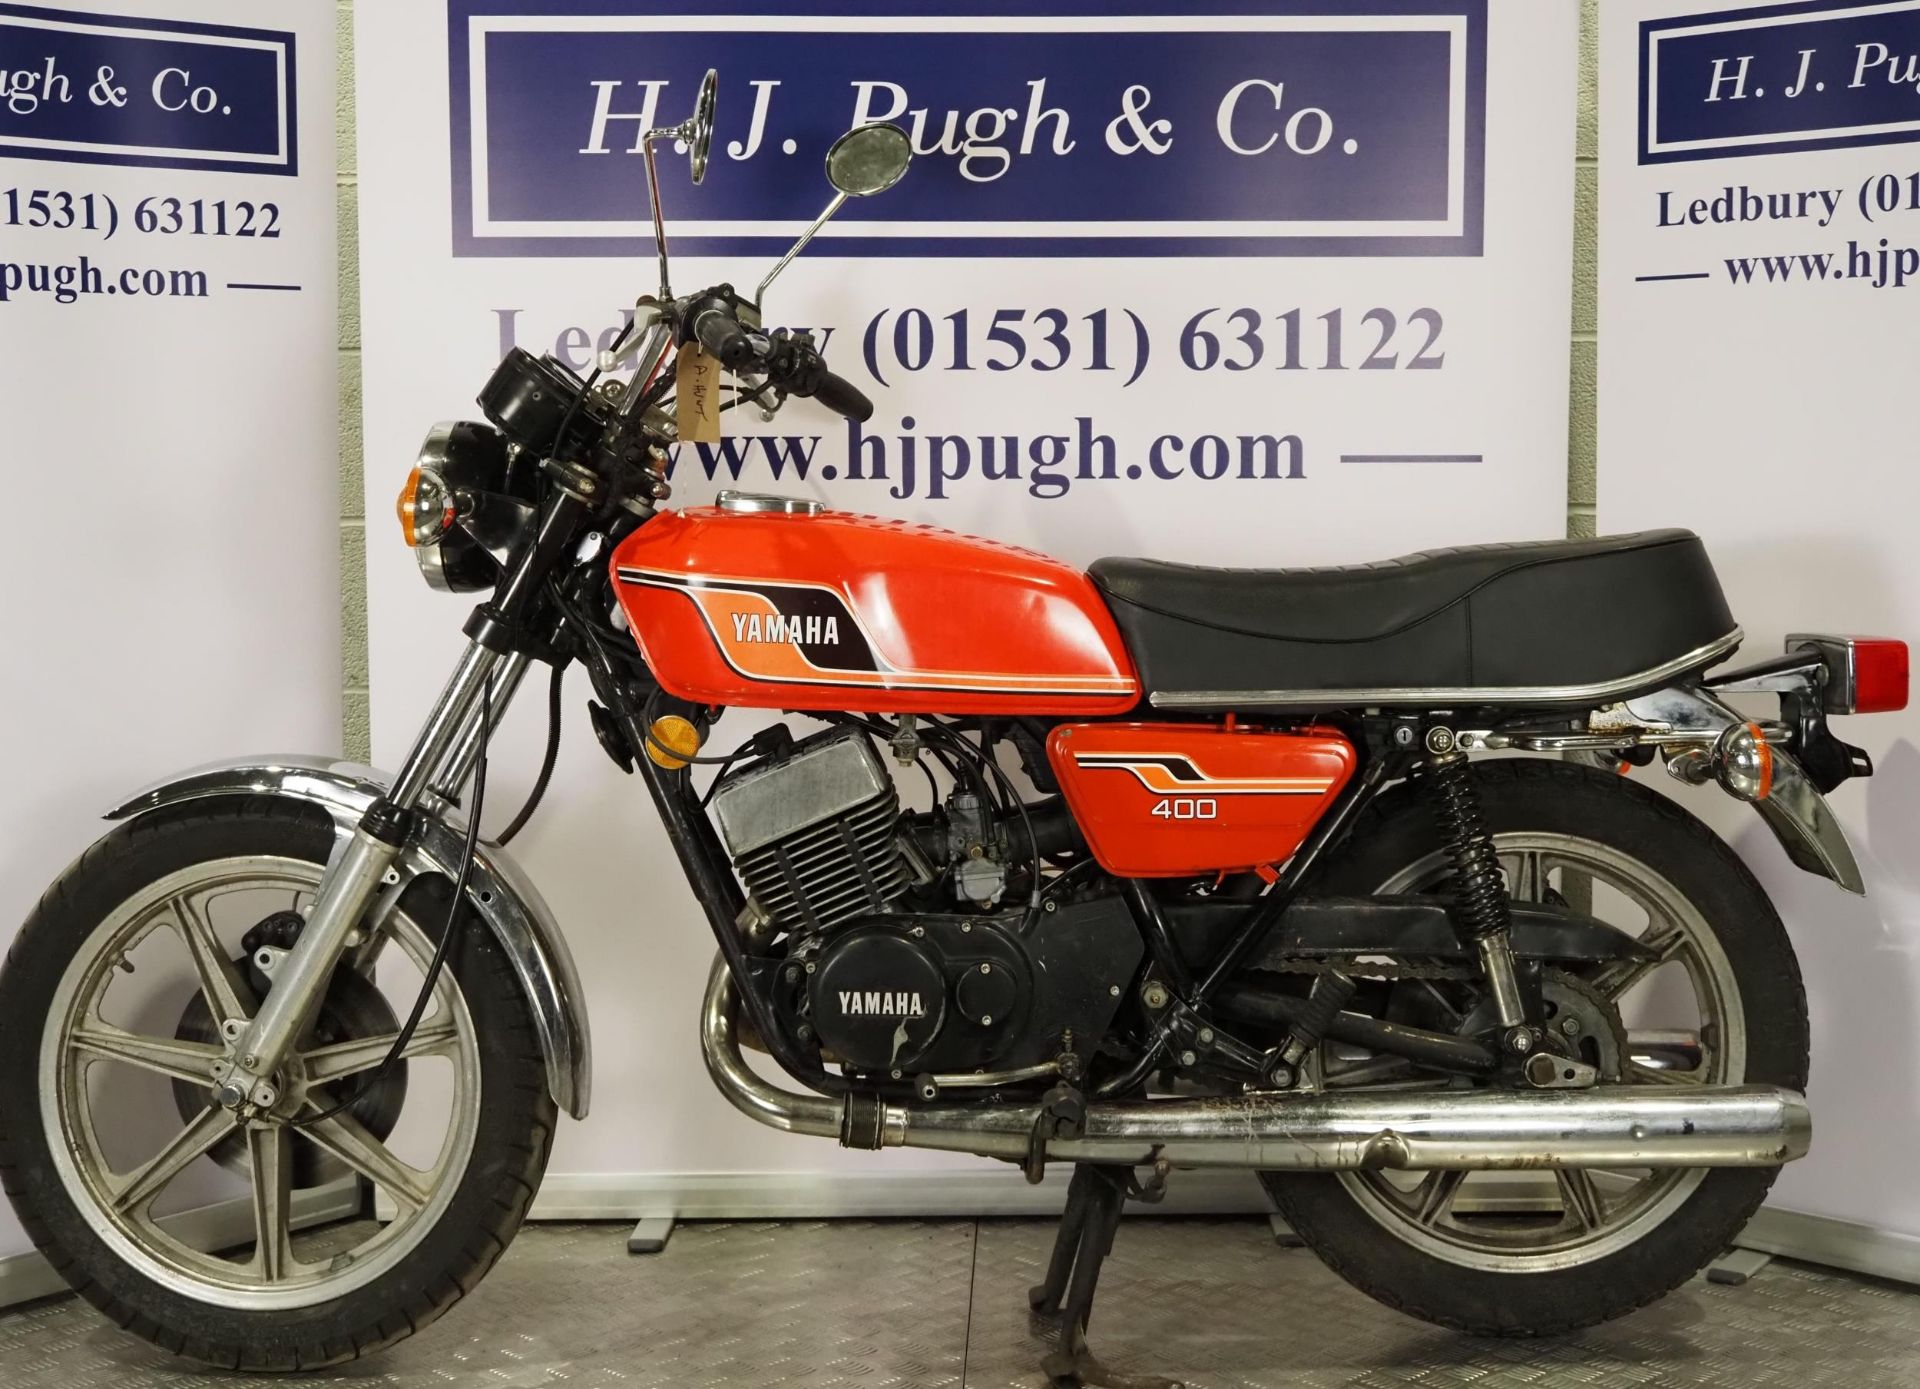 Yamaha RD400 motorcycle. 1976. 399cc. Frame No. 1A1008827 Engine No. 1A1-308468 Runs and rides. - Image 6 of 6